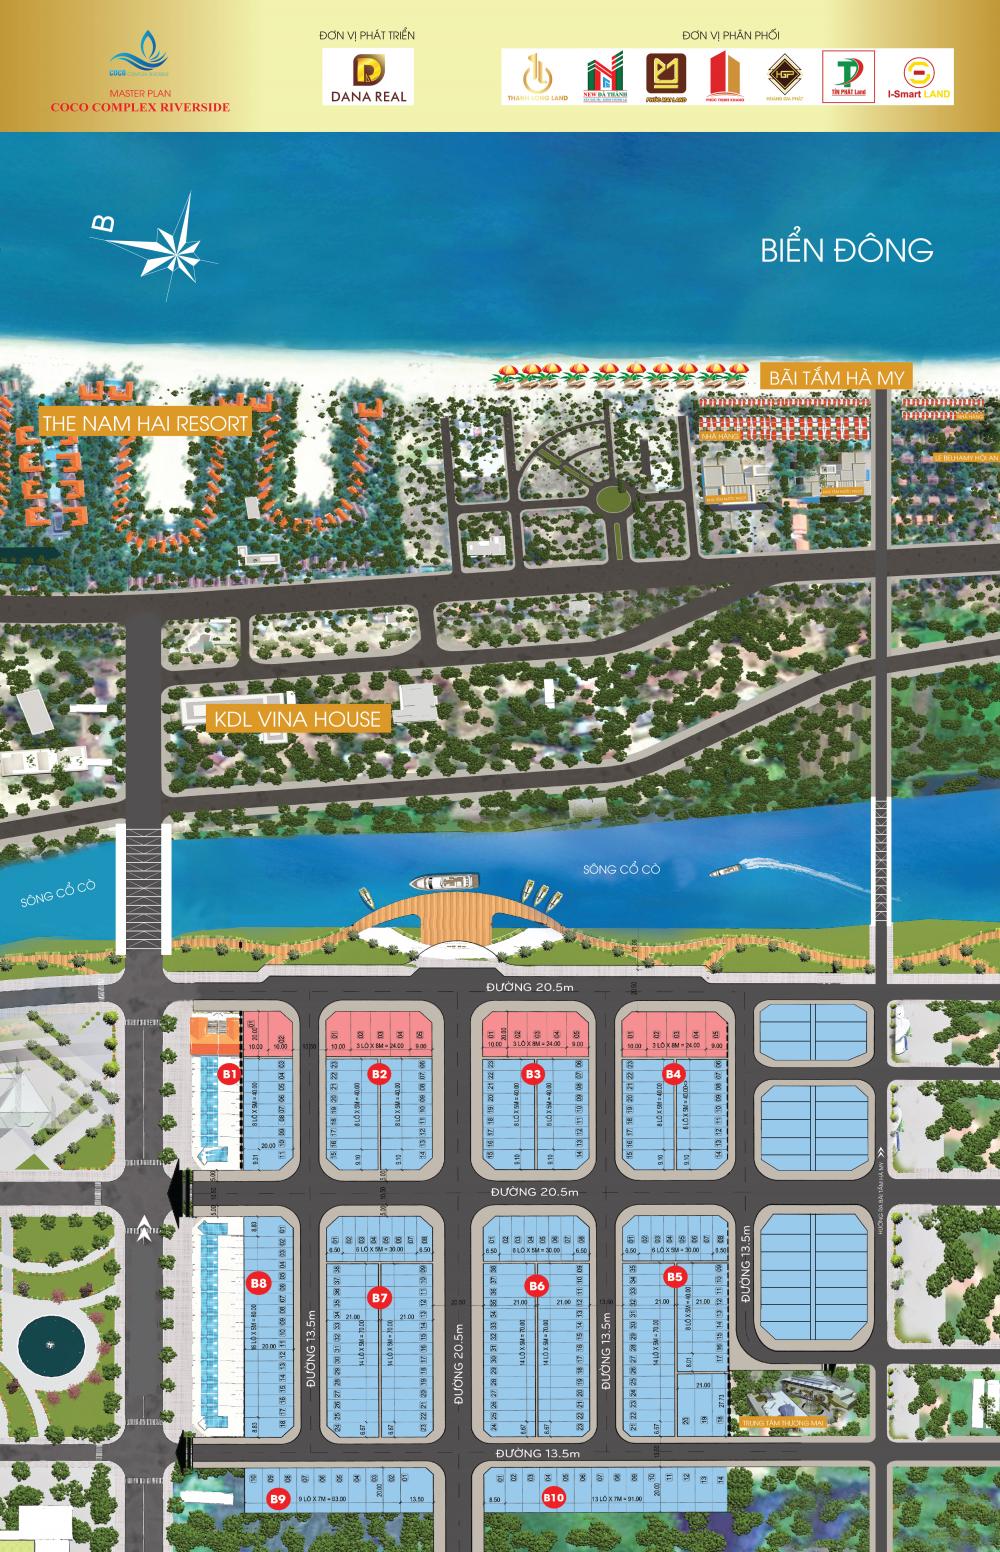 Coco Complex Riverside, cơ hội đầu tư lợi nhuận 100 triệu/năm.Lh 0943 404 327 Mr.Hoàng